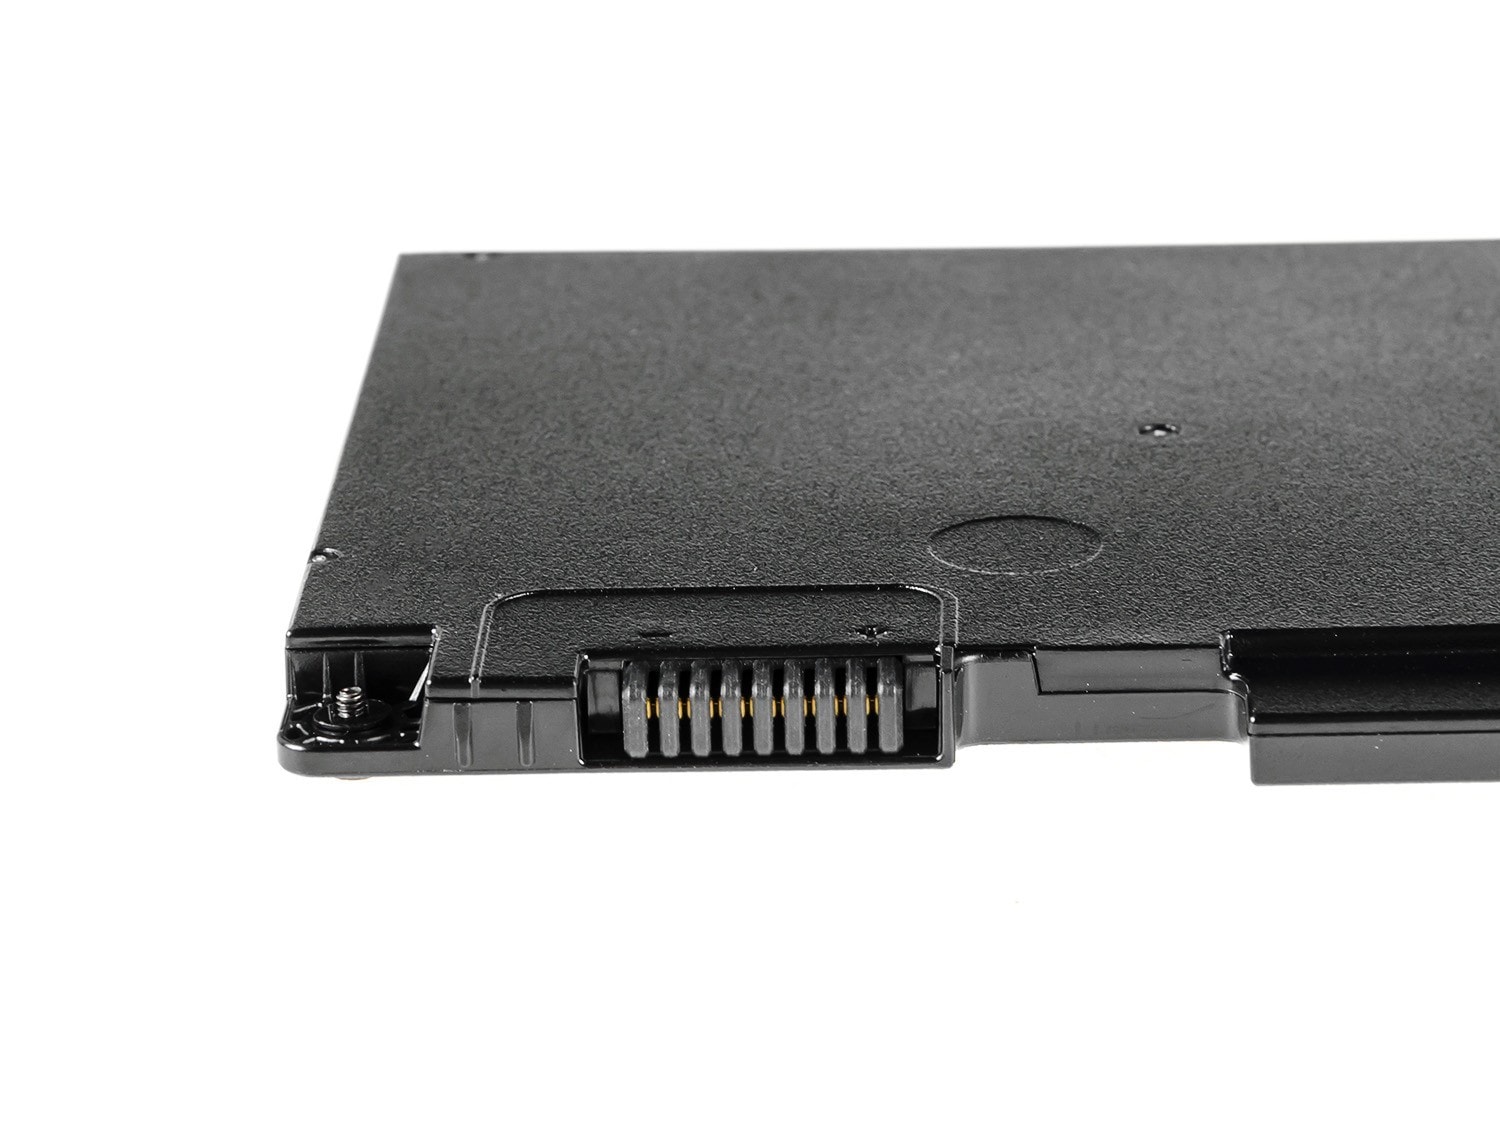 Green Cell laptopbatteri til HP EliteBook 745 G3 755 G3 840 G3 848 G3 850 G3